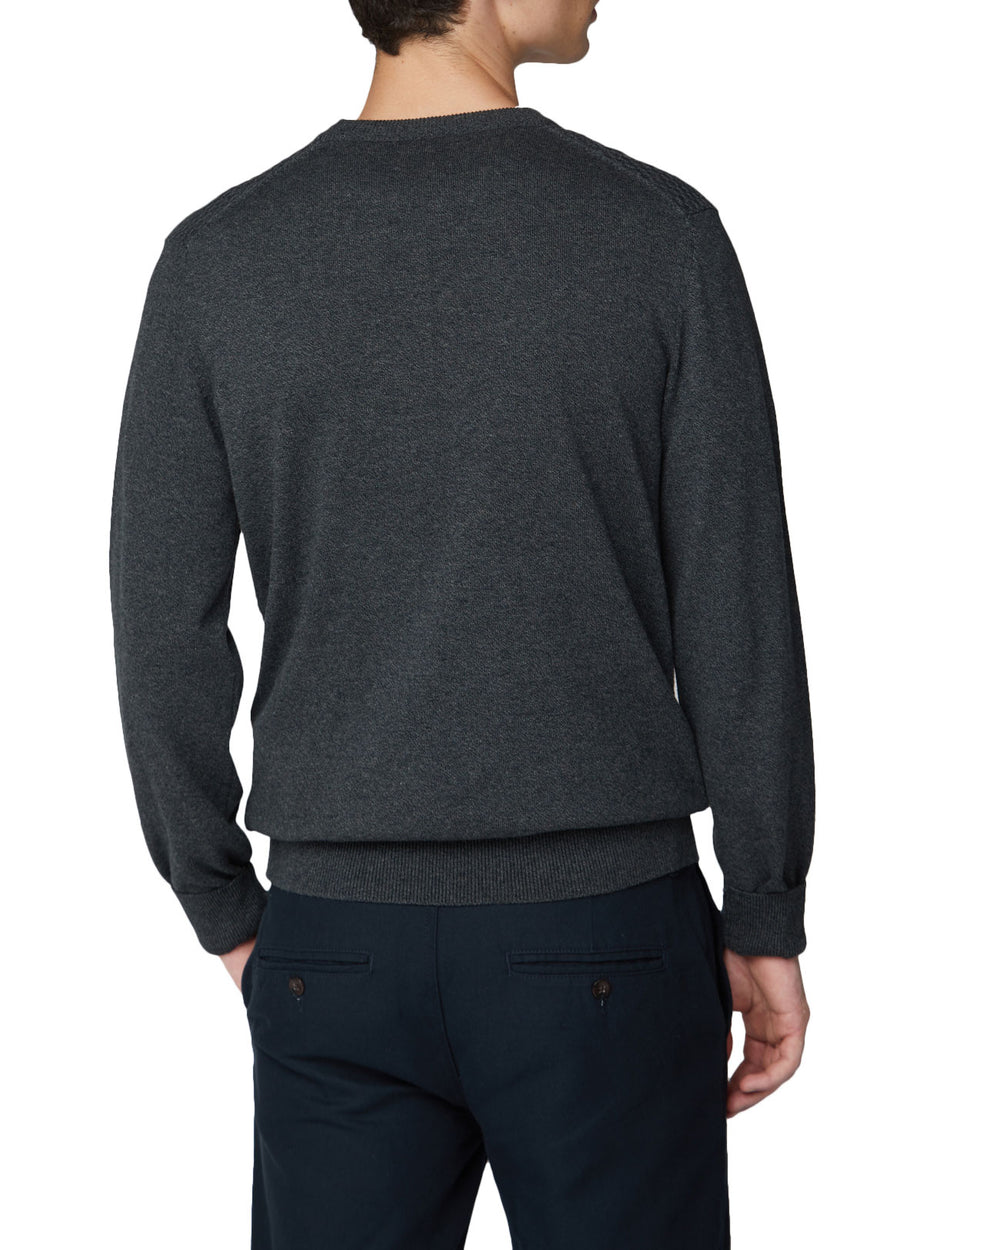 Textured Knit Crewneck Sweater - Grey